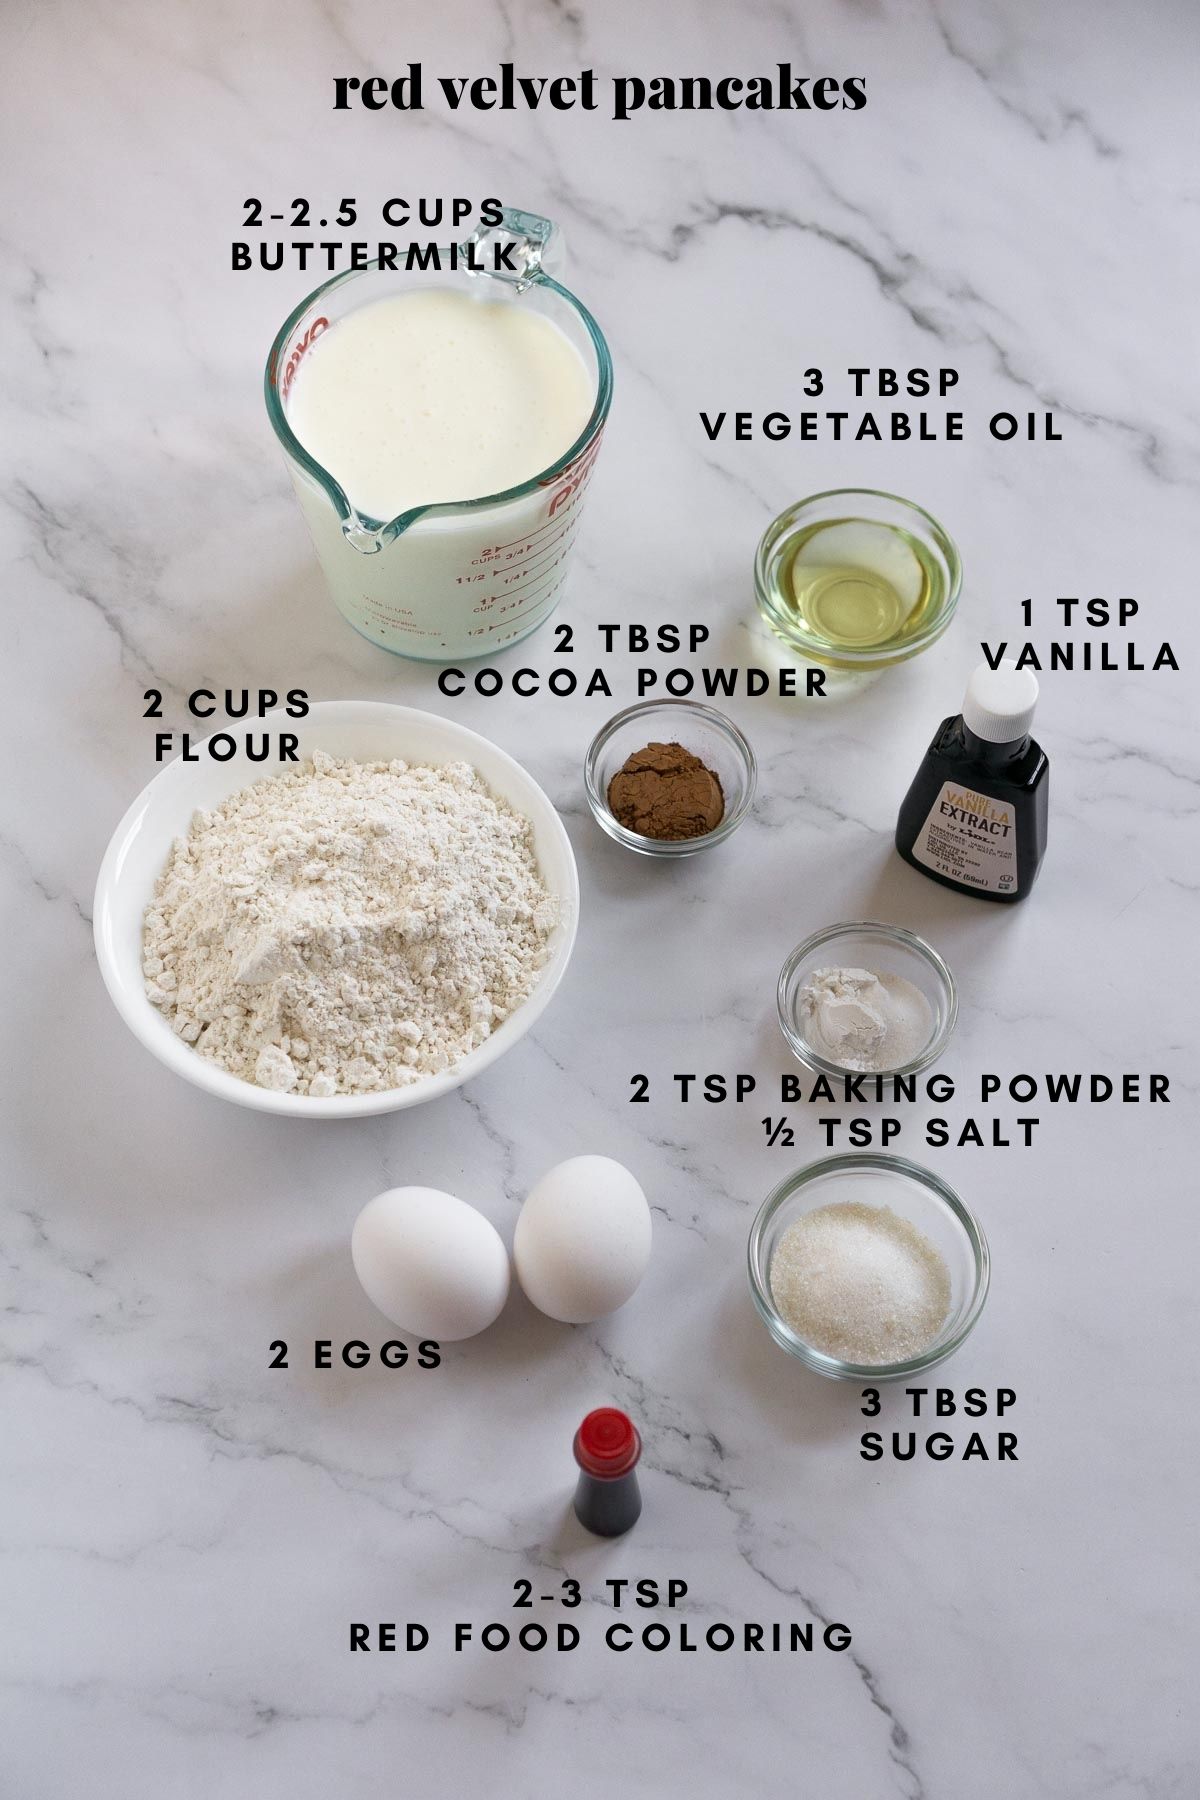 Ingredients for red velvet pancakes